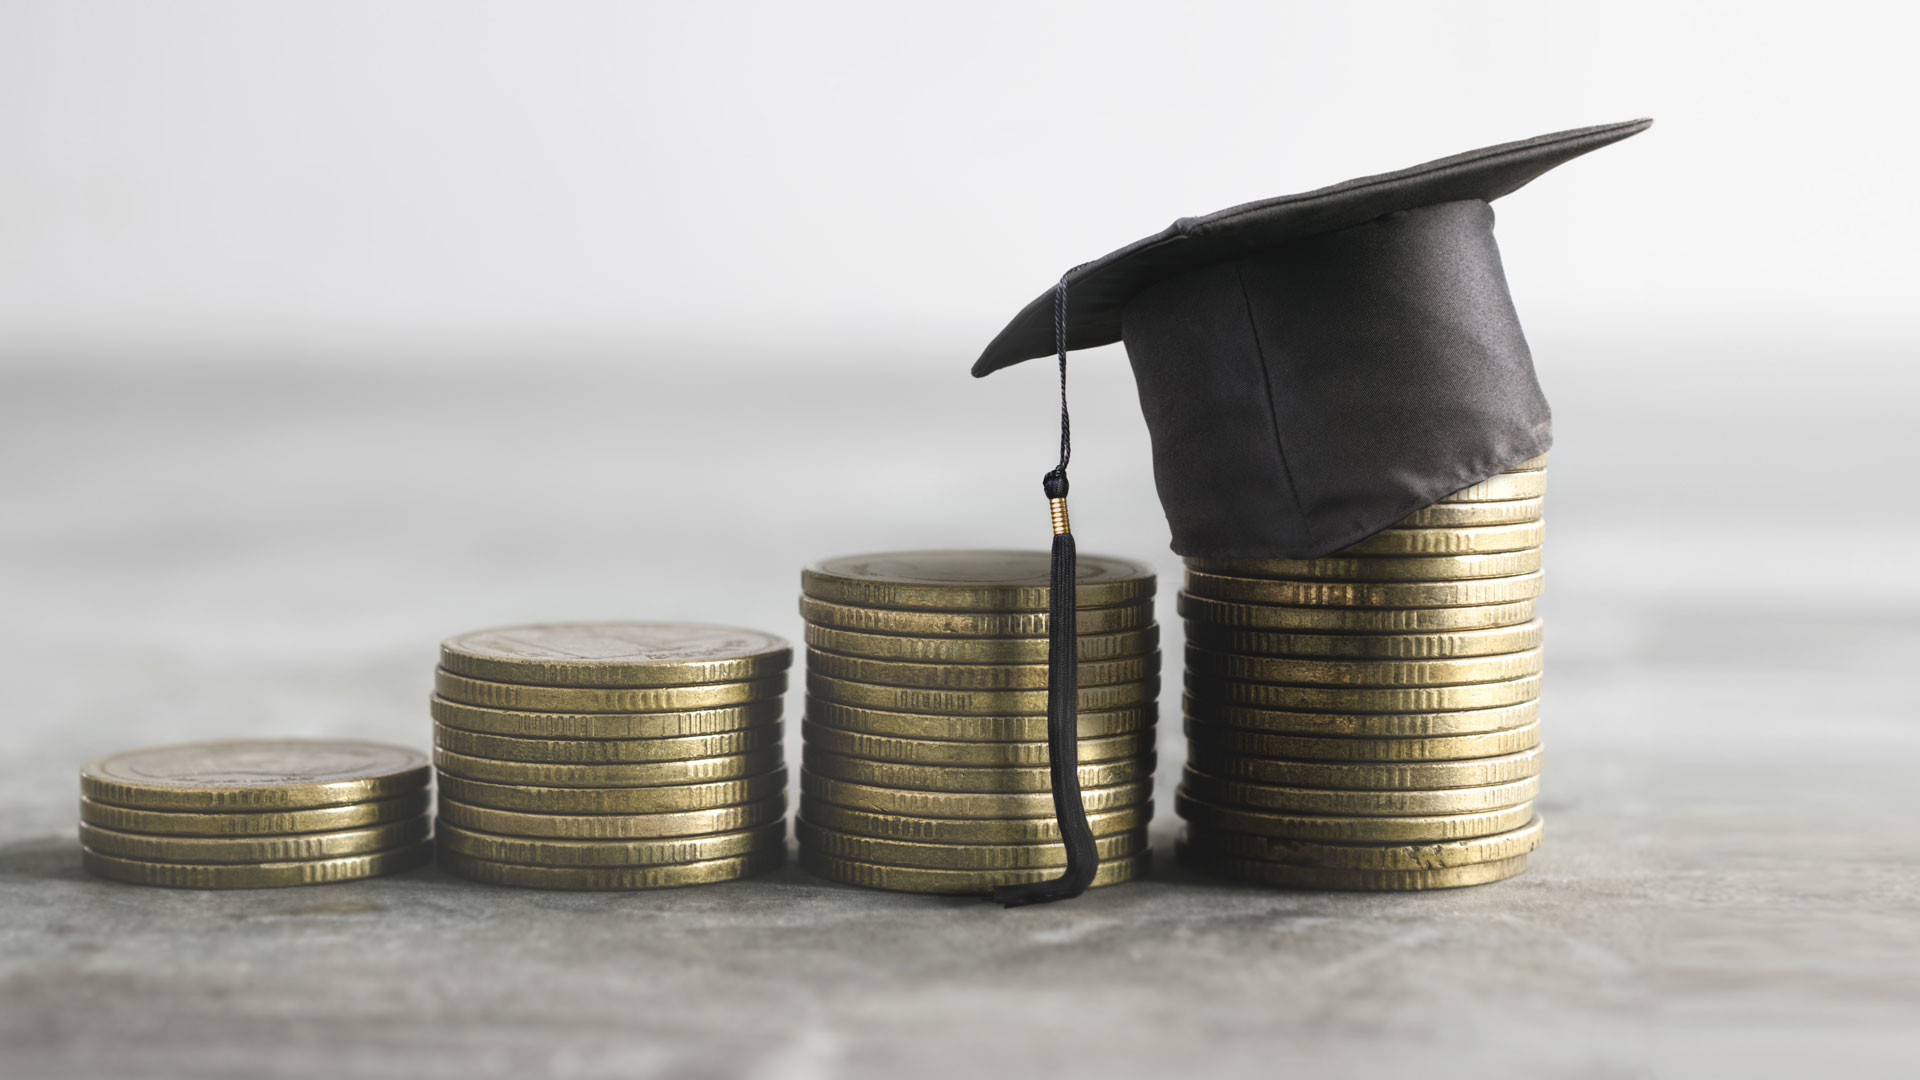 студенческий кредит на обучение в сбербанке 2020 даем кредит отзывы